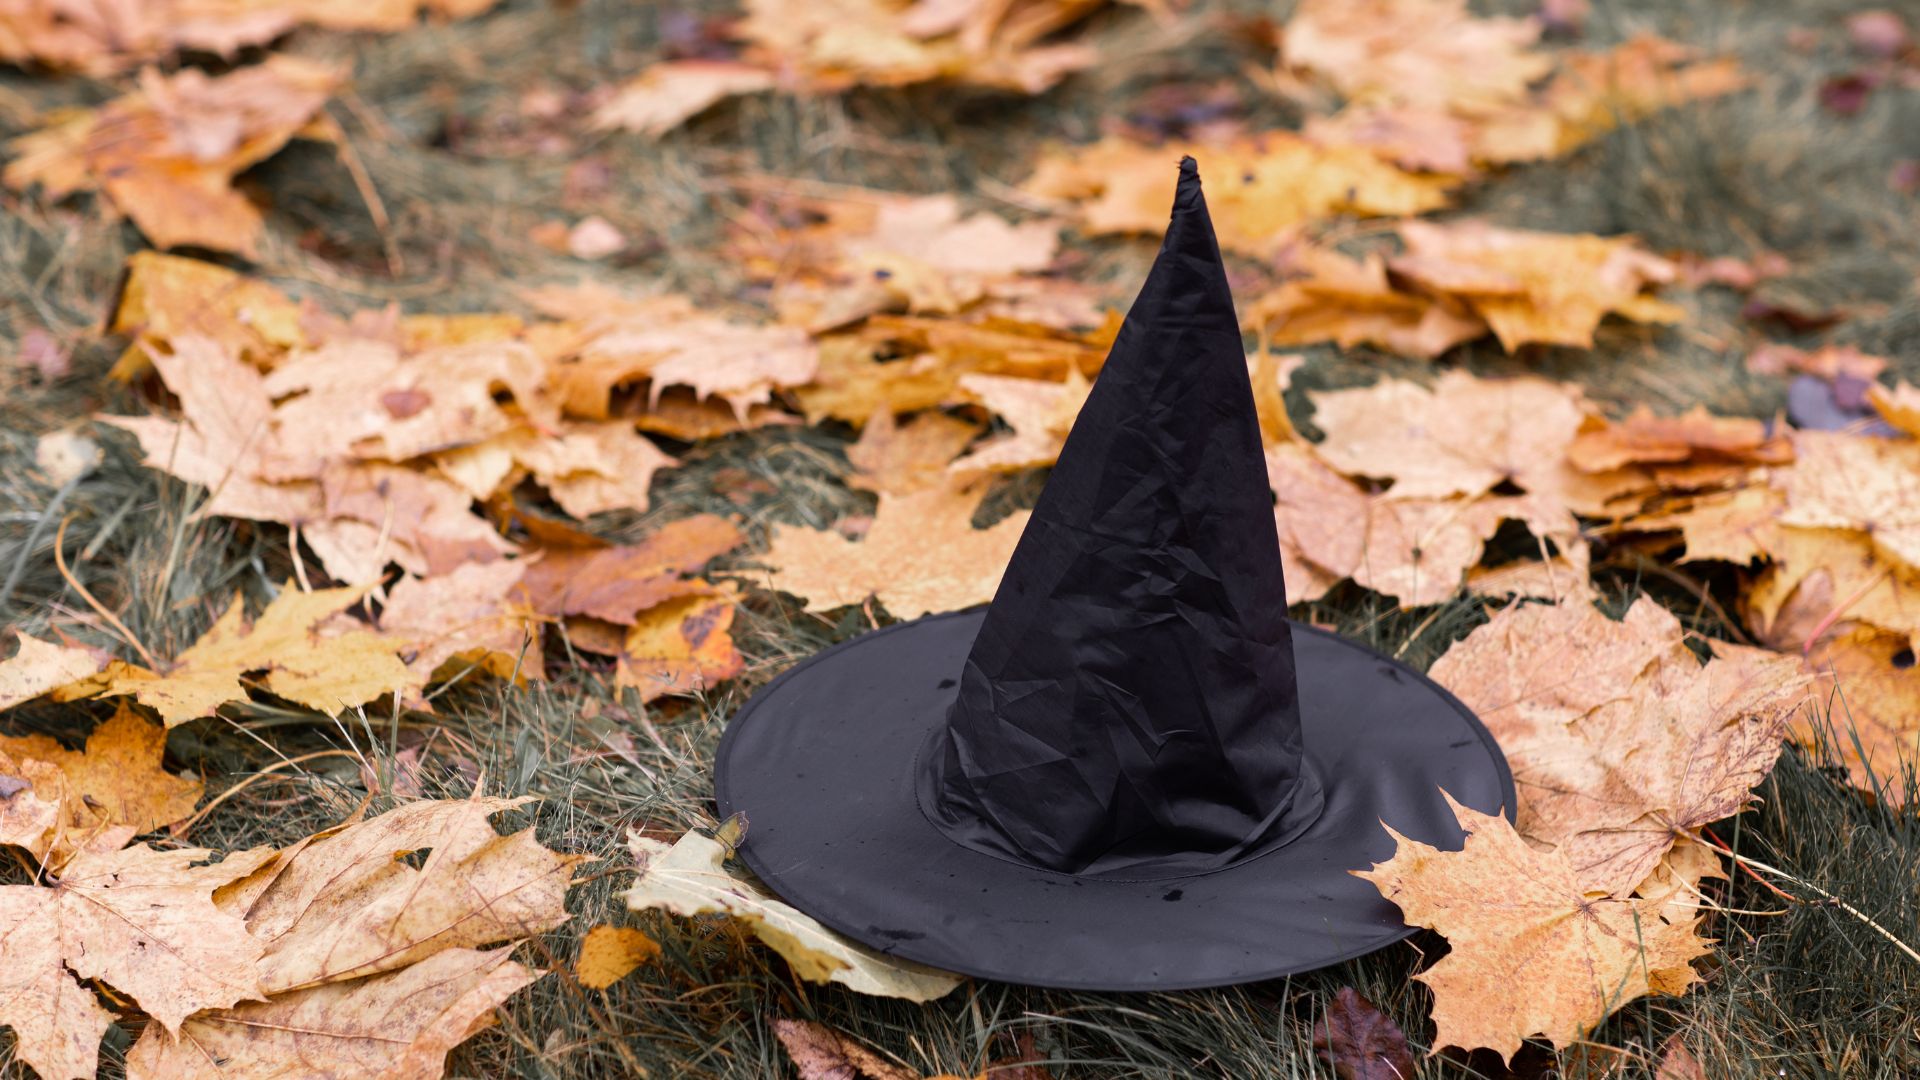 Imagem de um gramado cheio de folhas de outono sobre o chão. Em destaque, um chapéu de bruxa preto.